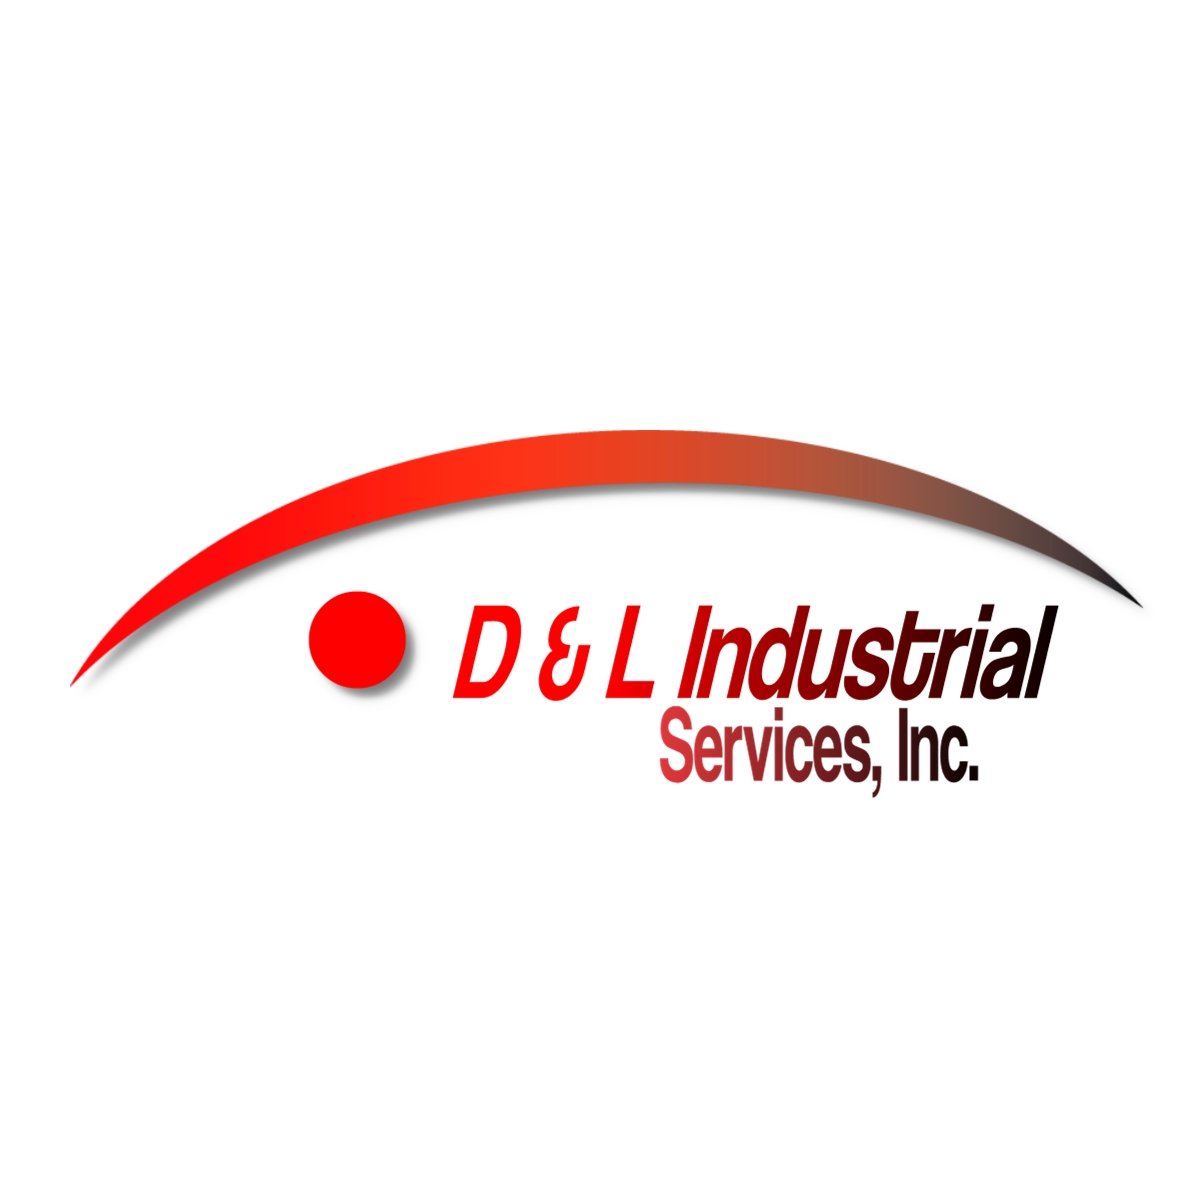 D & L Industrial Services